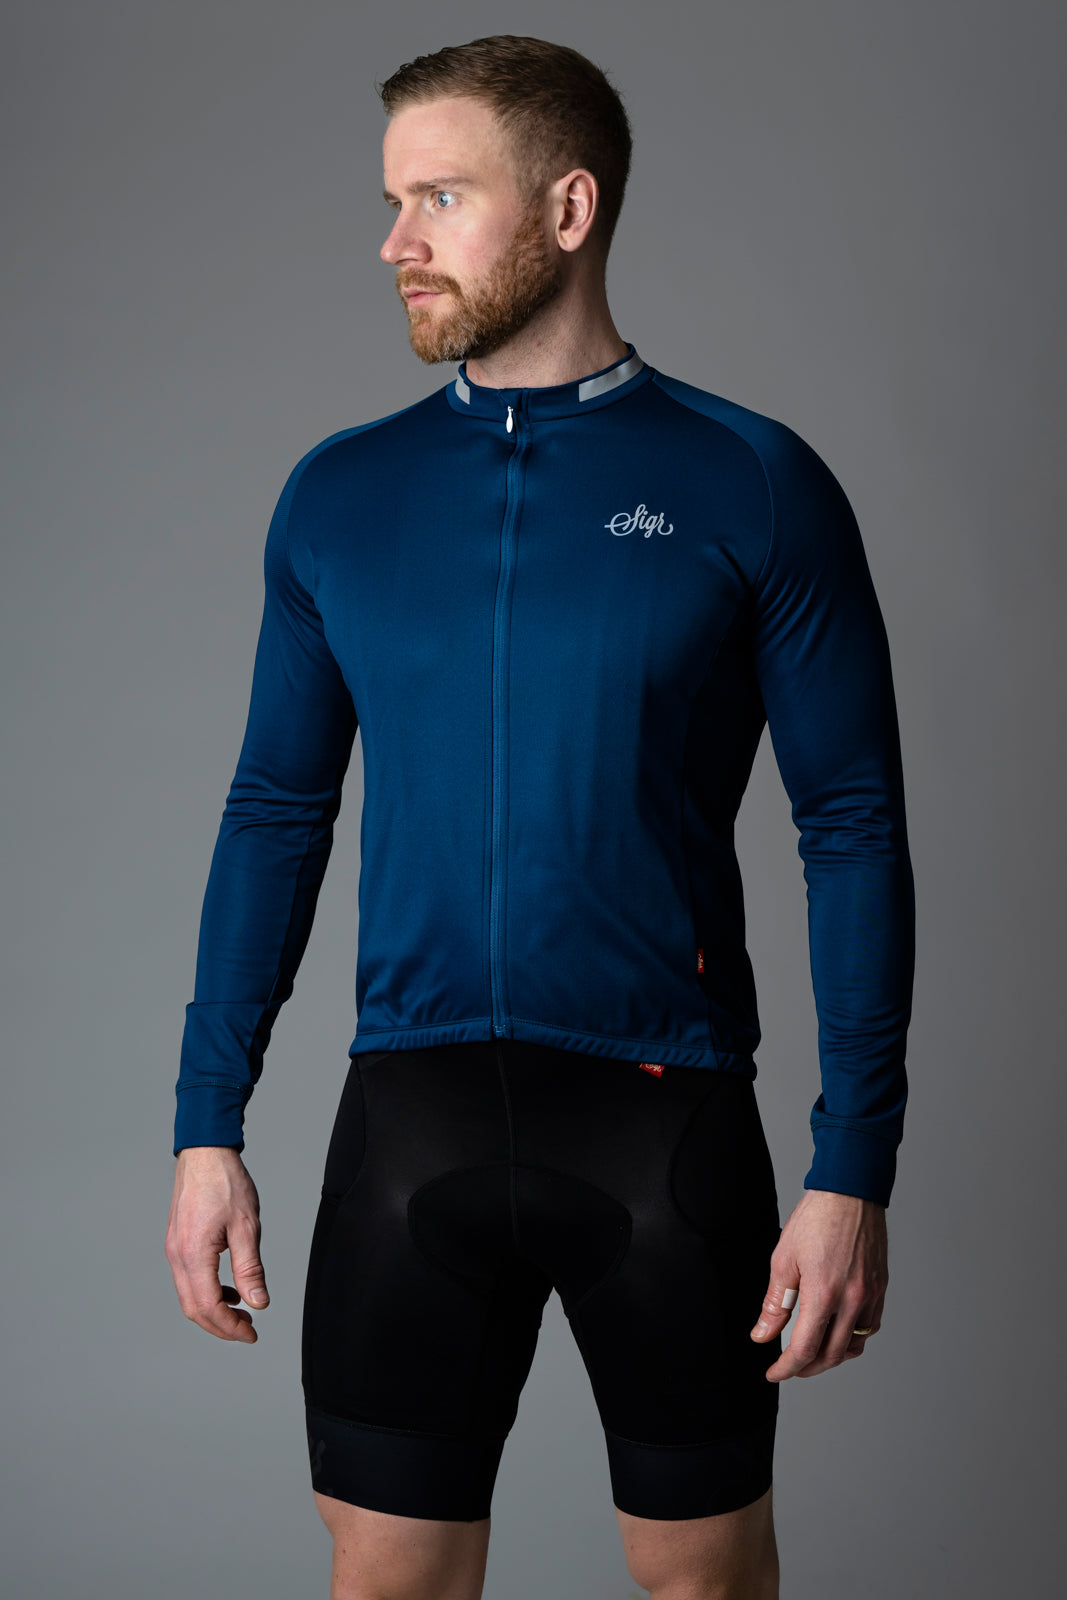 Sigr Krokus Blue - Warmer Long Sleeved Jersey for Men